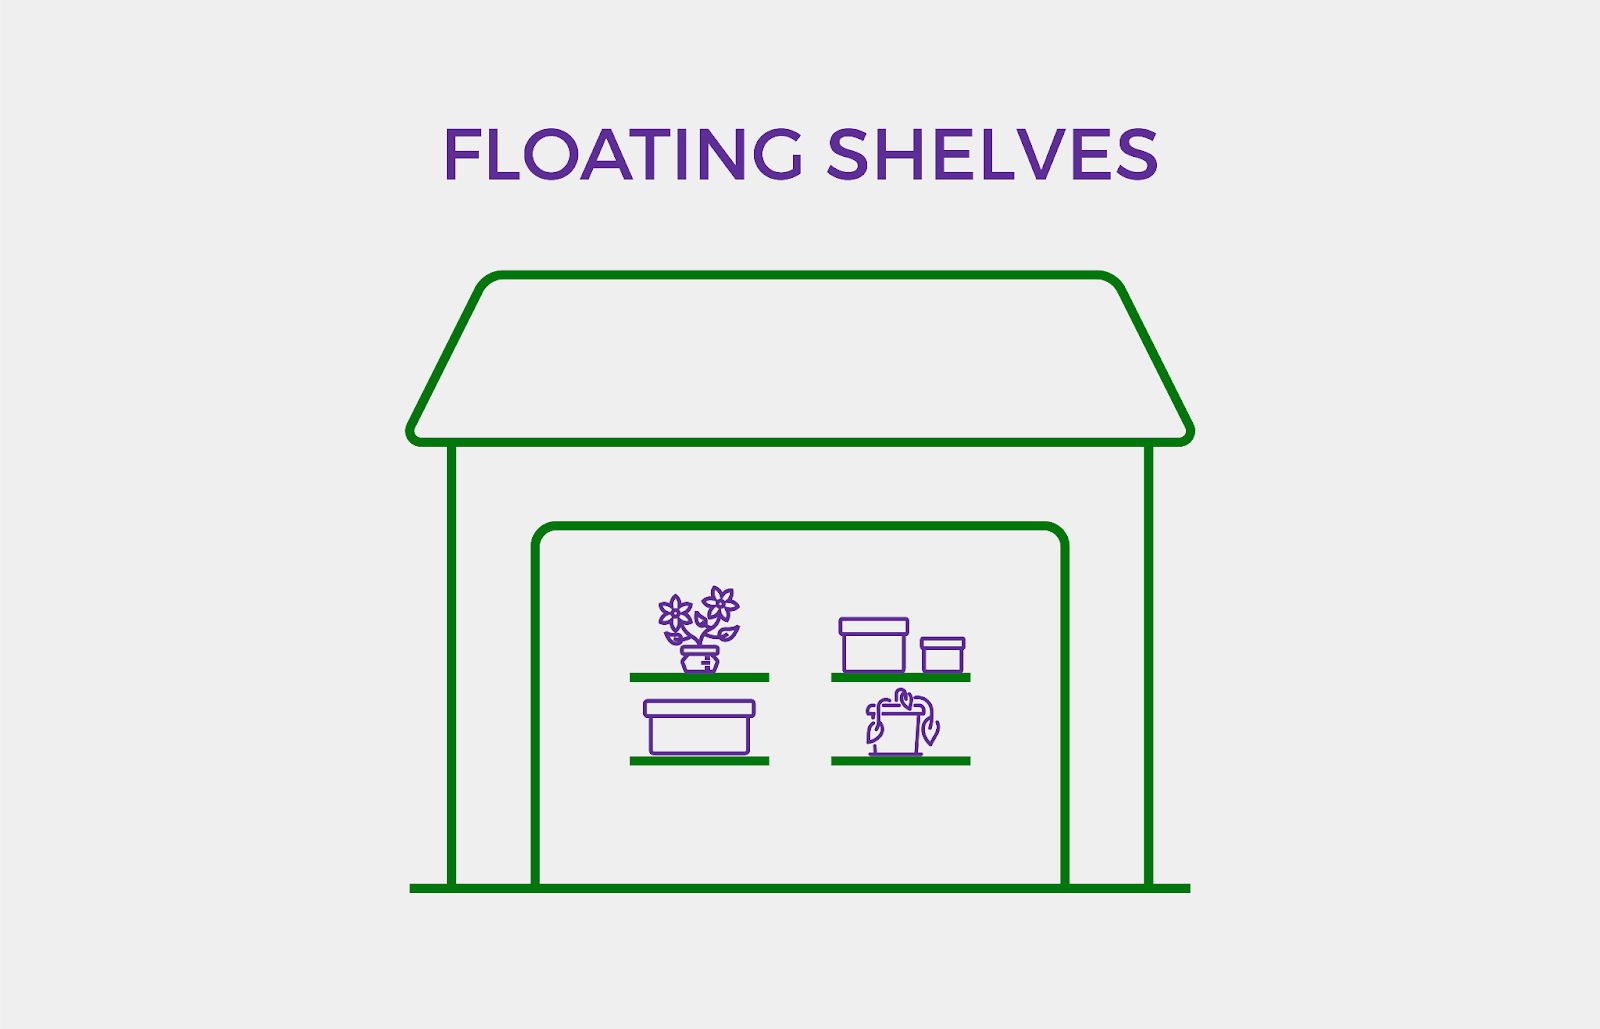 Floating shelves